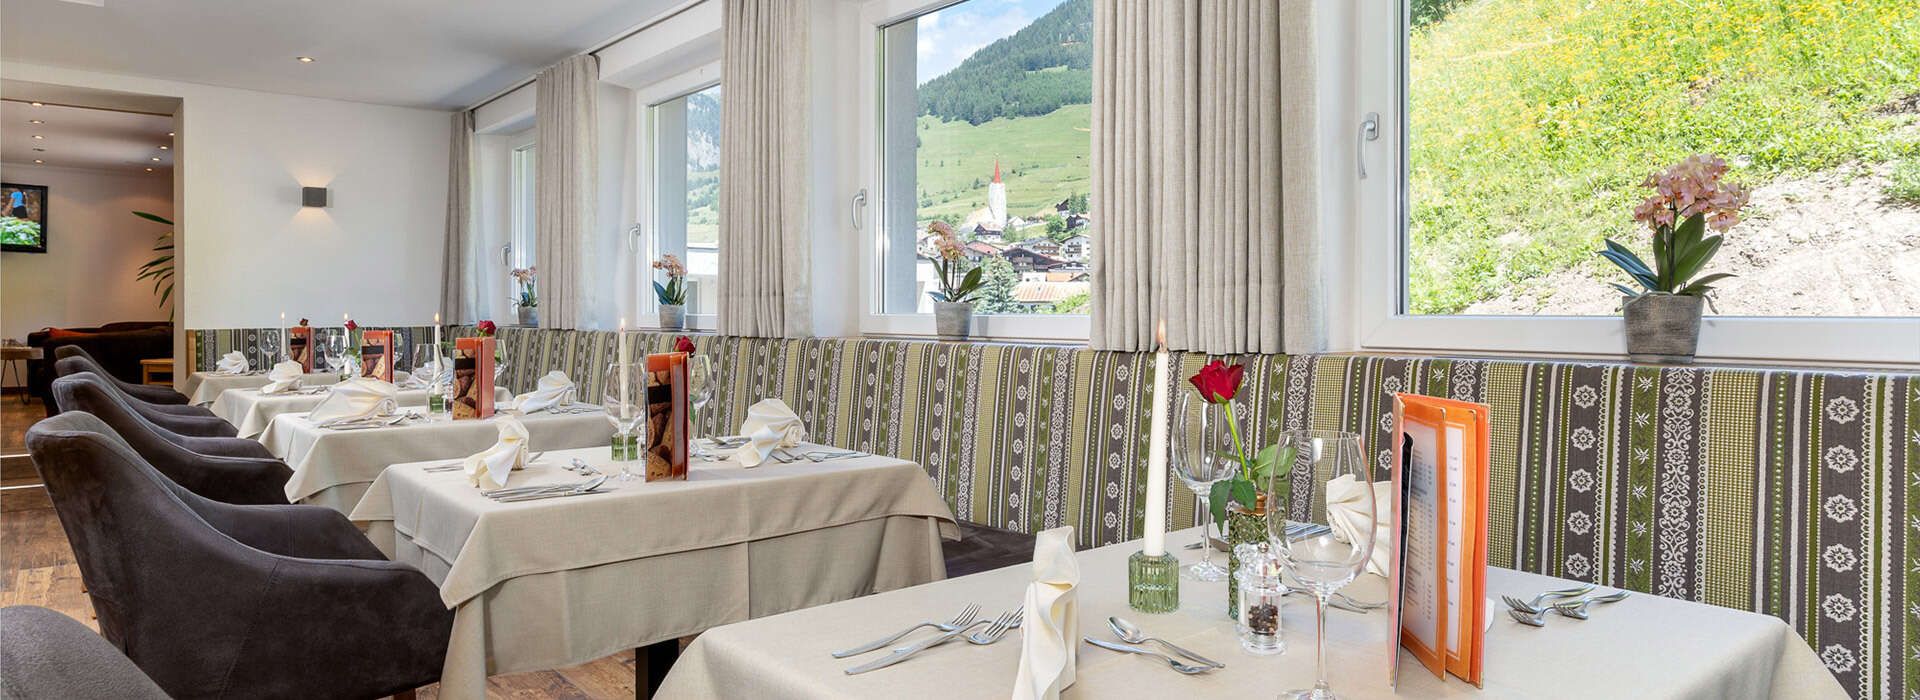 Restaurant of the Hotel Schlossberg Nauders